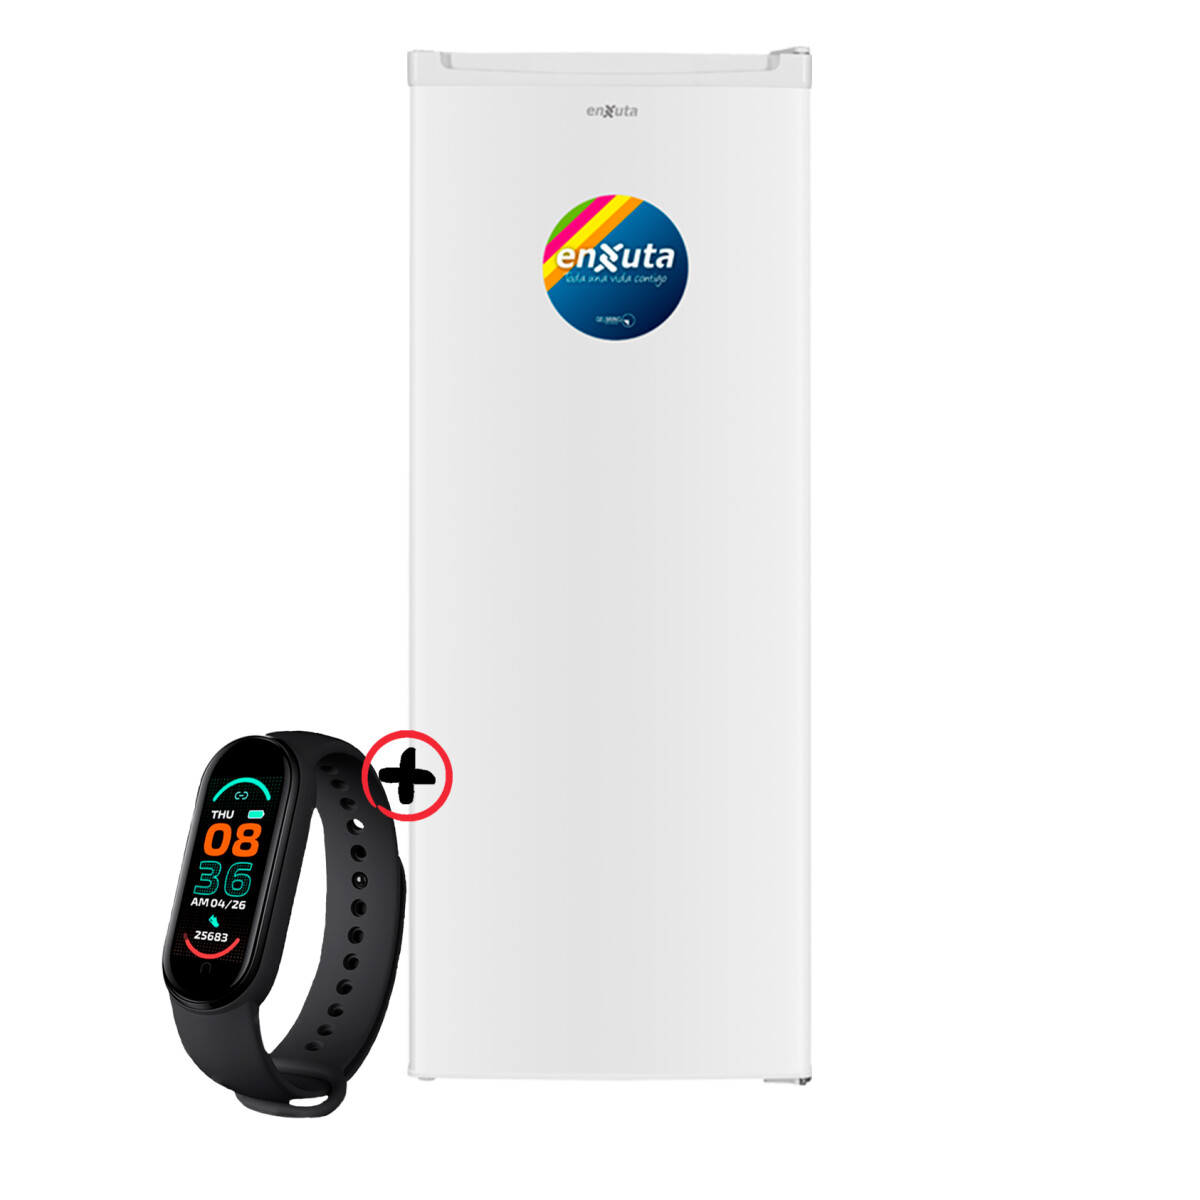 Freezer Vertical Enxuta 168 L Clase A Color Blanco + Smartwatch 